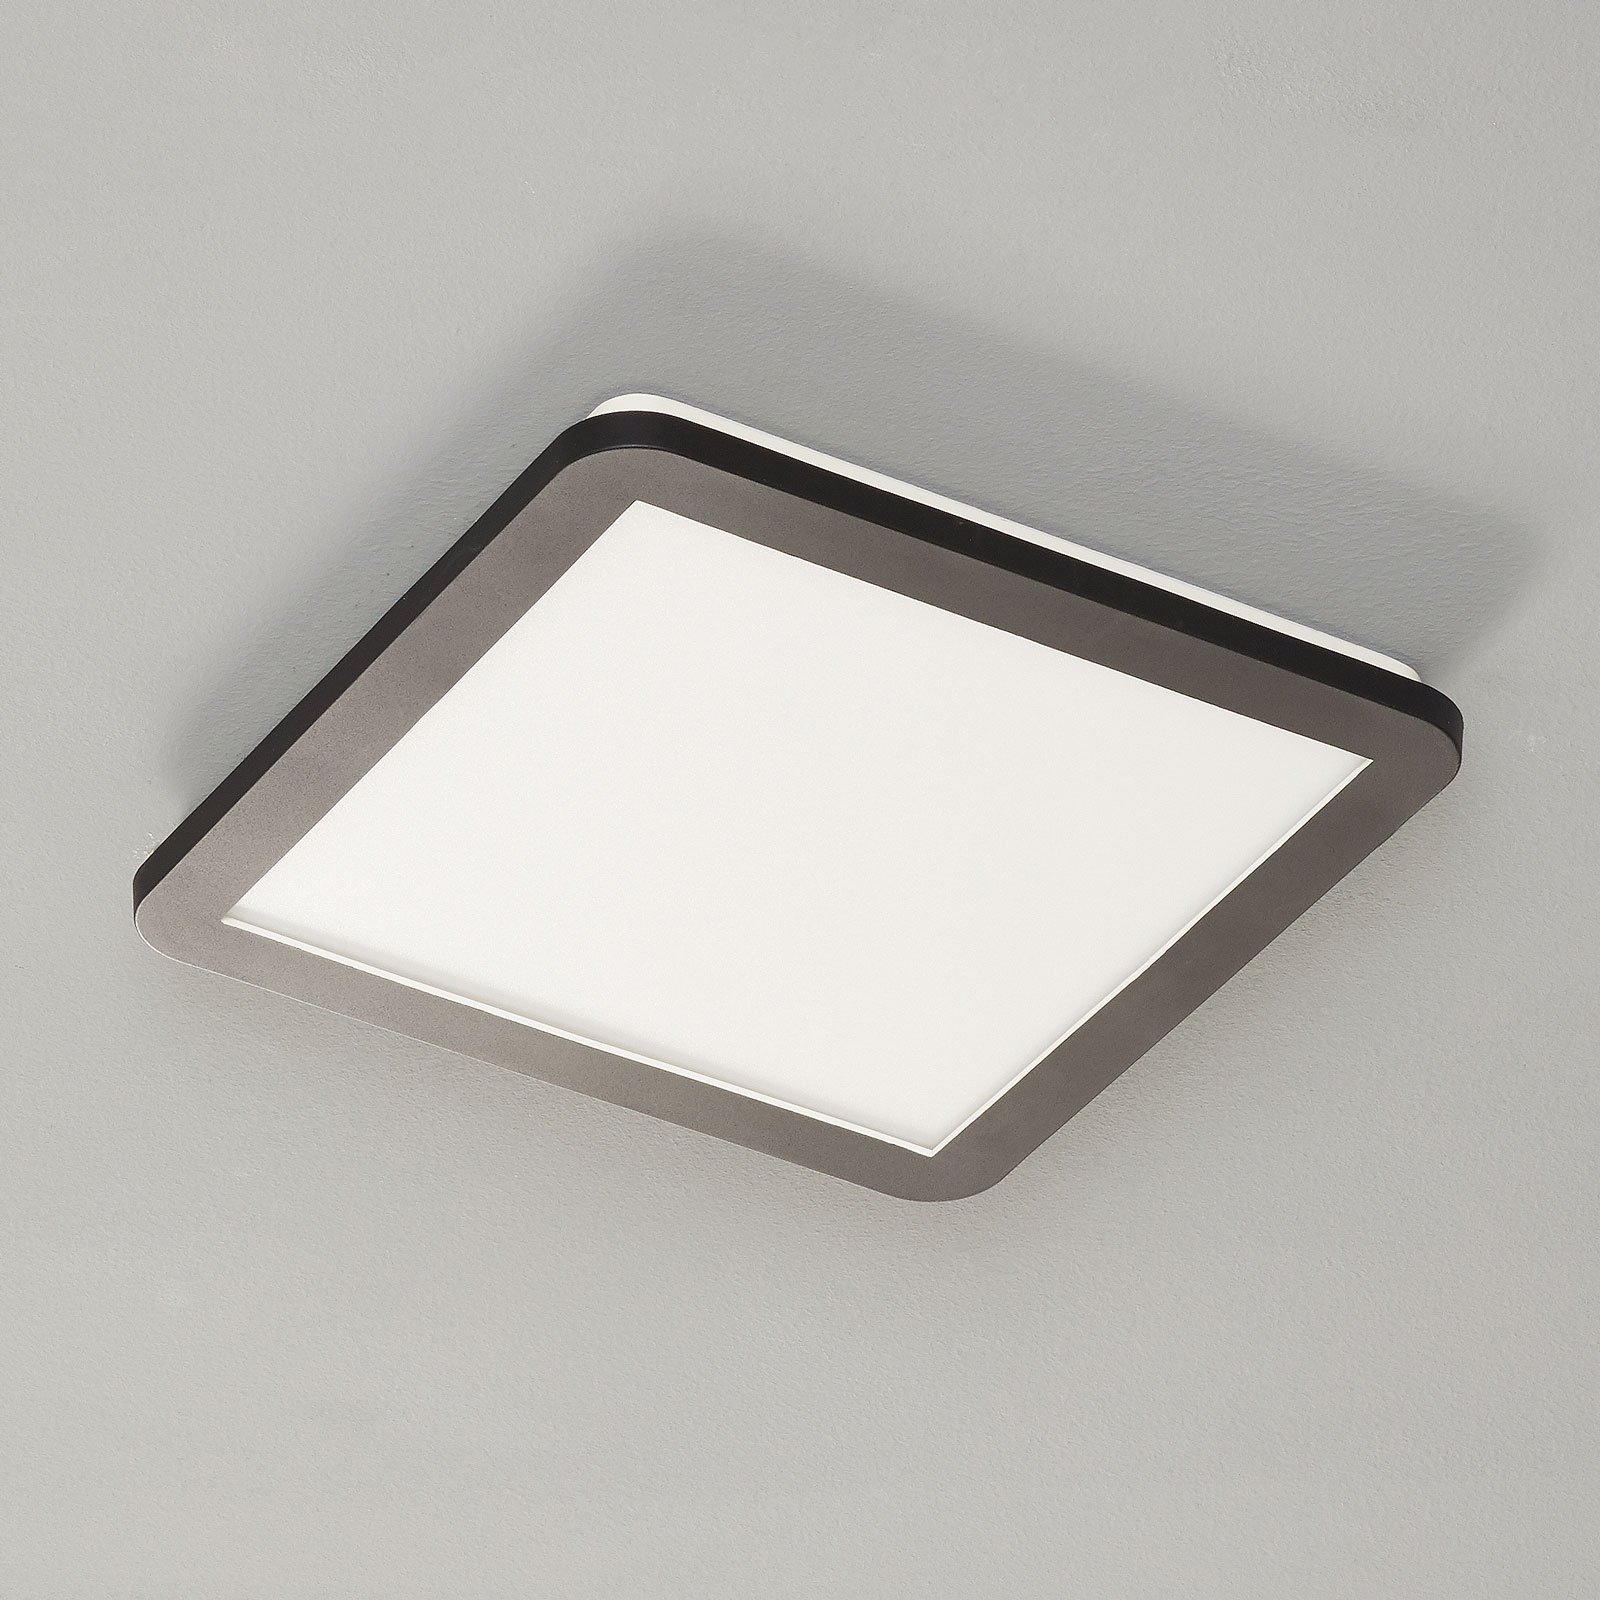 LED stropní svítidlo Camillus, čtverec, 30 cm